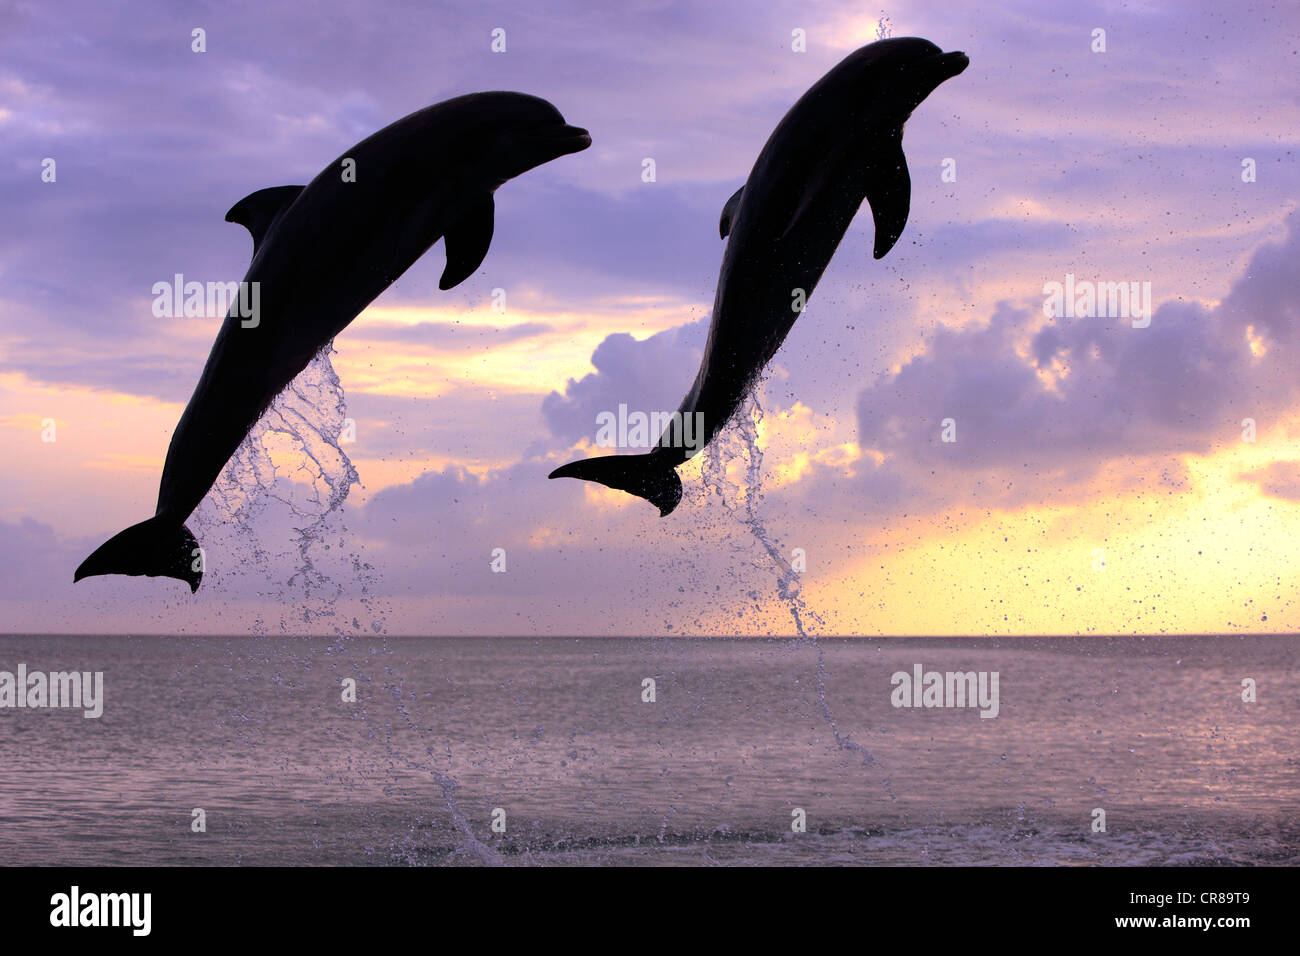 Dos delfines nariz de botella (Tursiops truncatus), adulto, saltando al atardecer, Roatán, Honduras, El Caribe, América Central Foto de stock